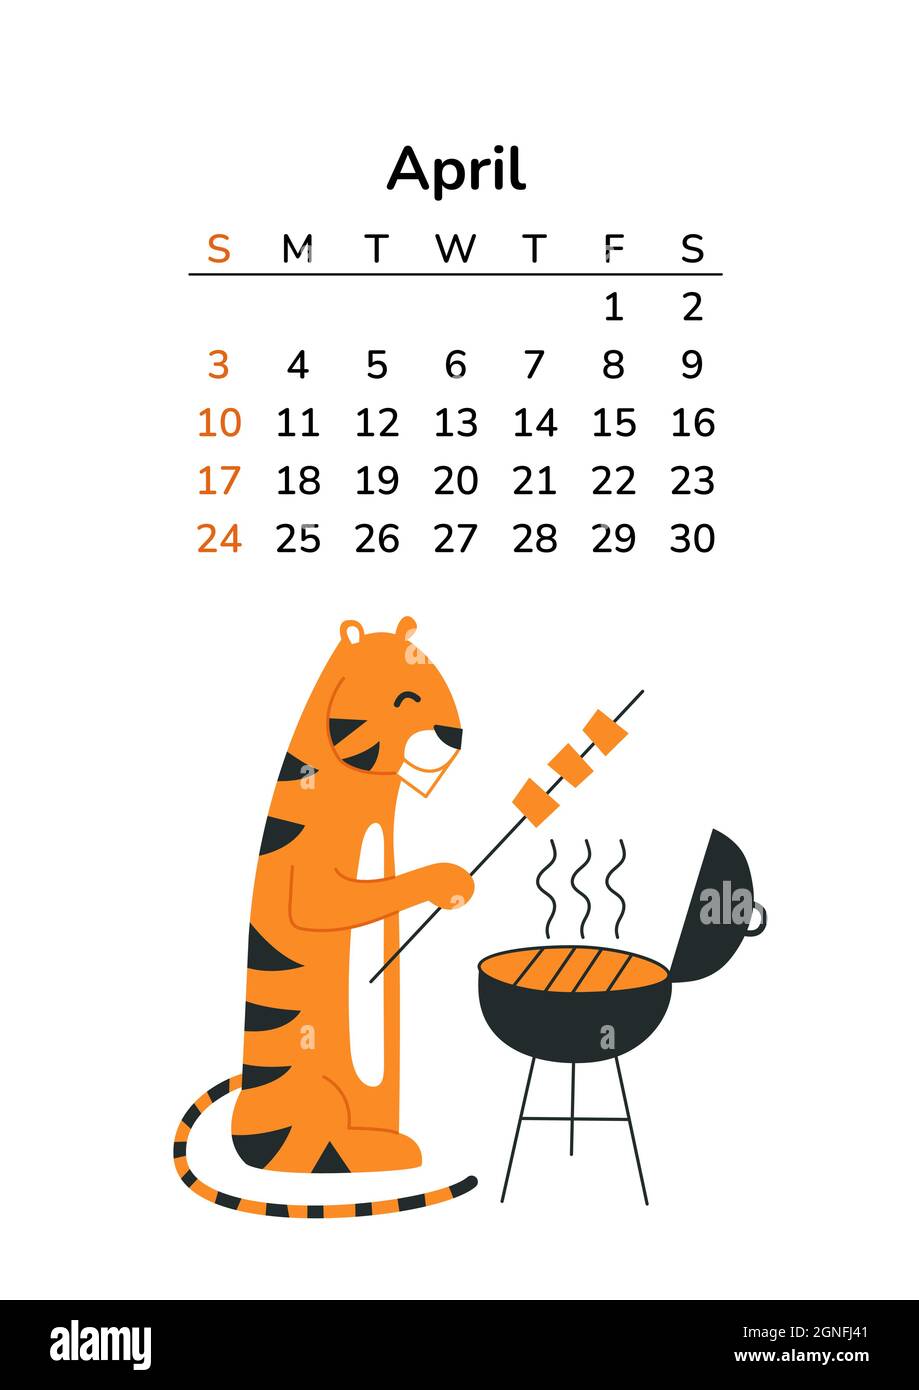 Vertikaler Kalender 2022 mit Tigern. April-Seite. Seiten im A4-Format.  Tiger im Cartoon-Stil. Chinesisches Horoskop. Die Woche beginnt am Sonntag.  Aktivitäten im Freien Stock-Vektorgrafik - Alamy